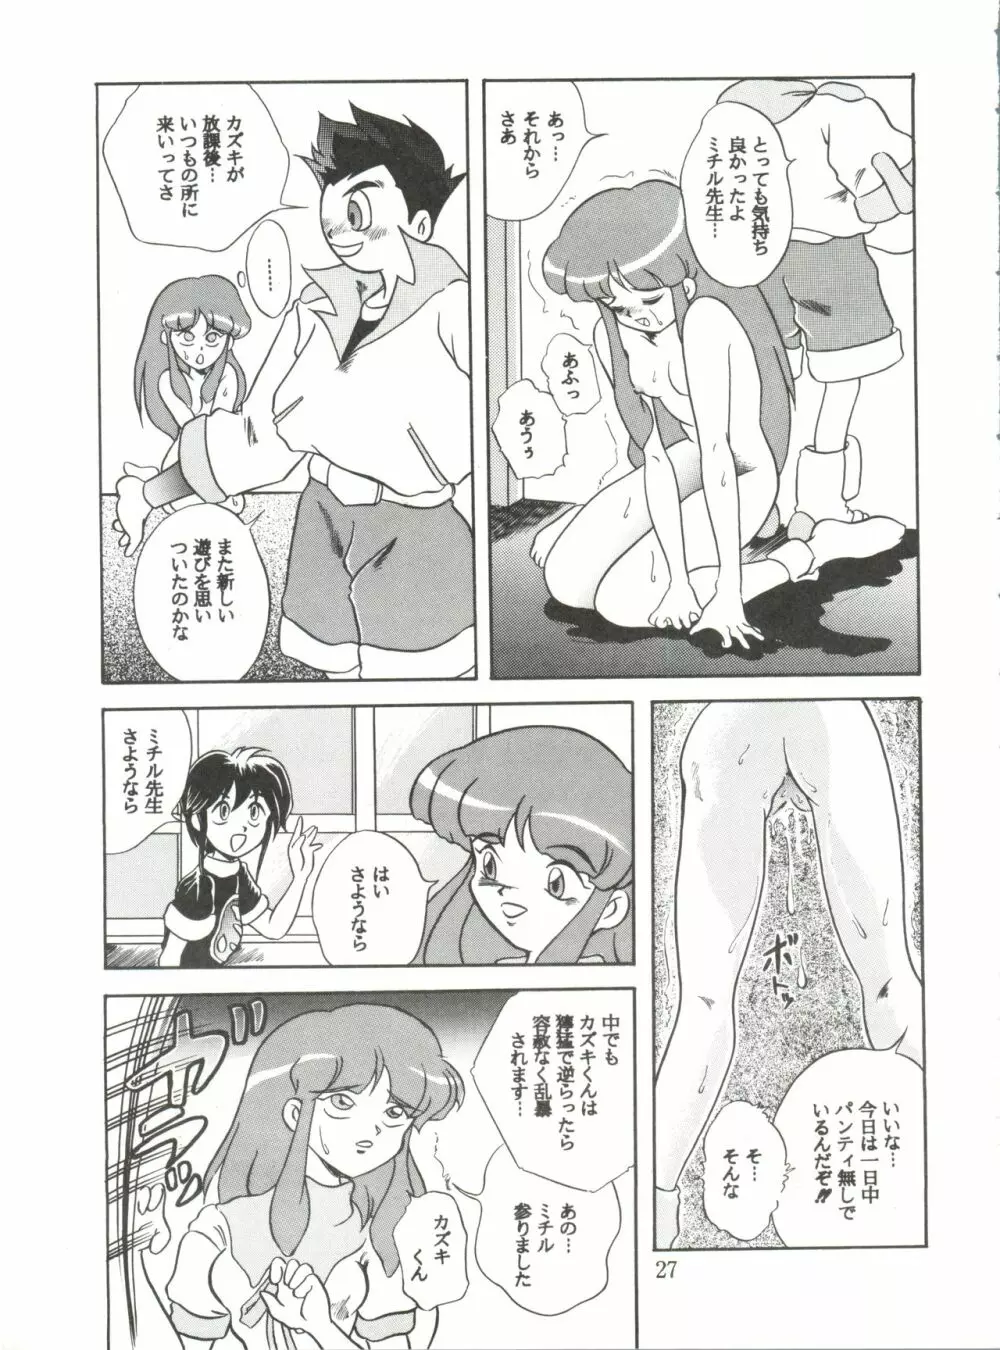 JoRiJoRi No.6 26ページ